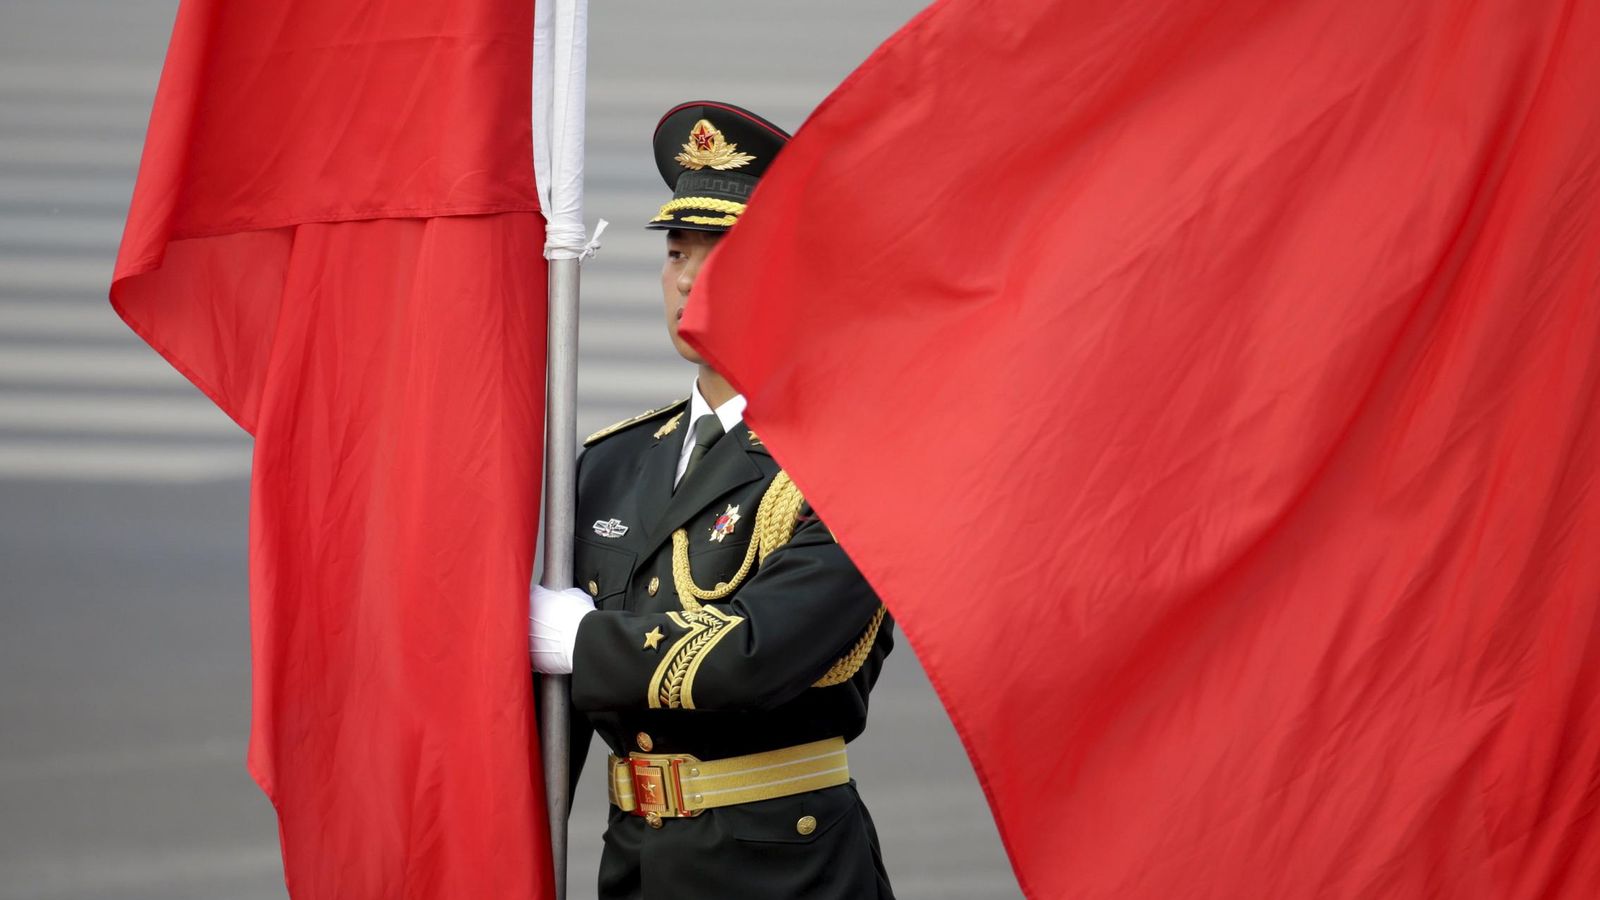 Foto: Un soldado de la guardia de honor china sostiene una bandera roja en una ceremonia en Pekín. (Reuters)